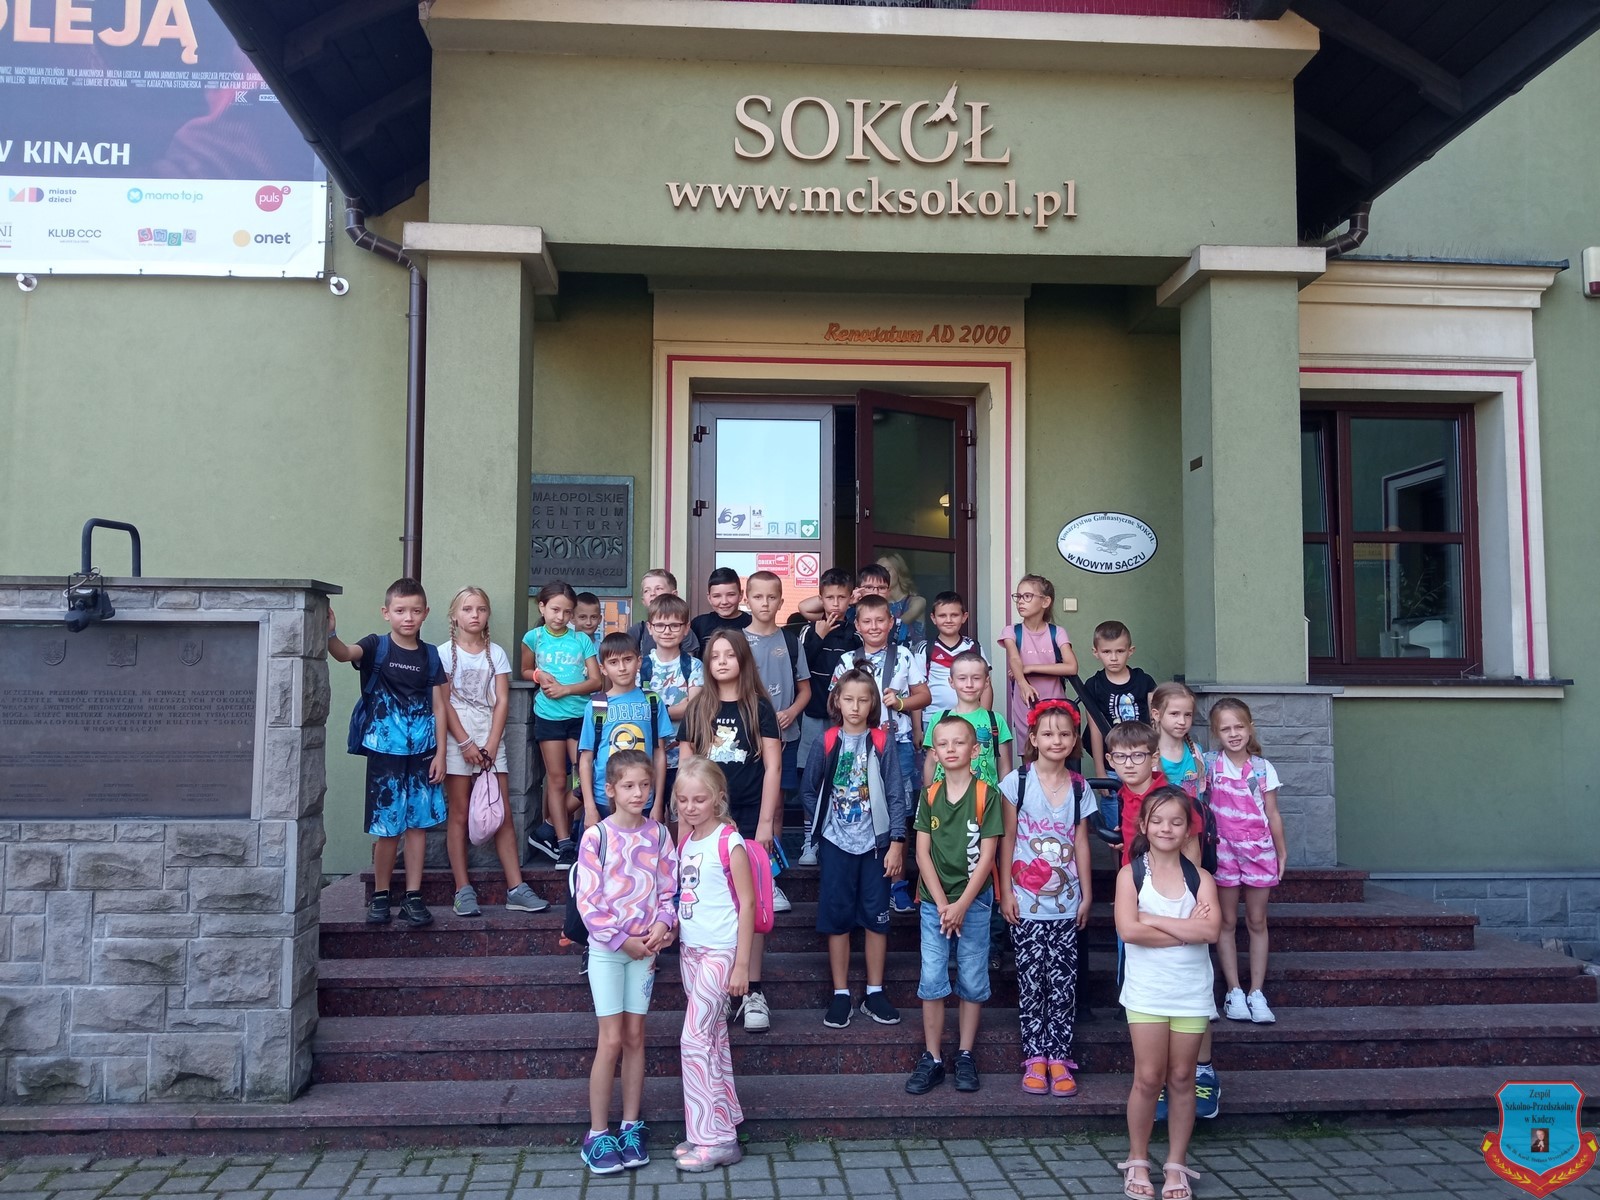 Grupa uczniów przed kinem Sokół